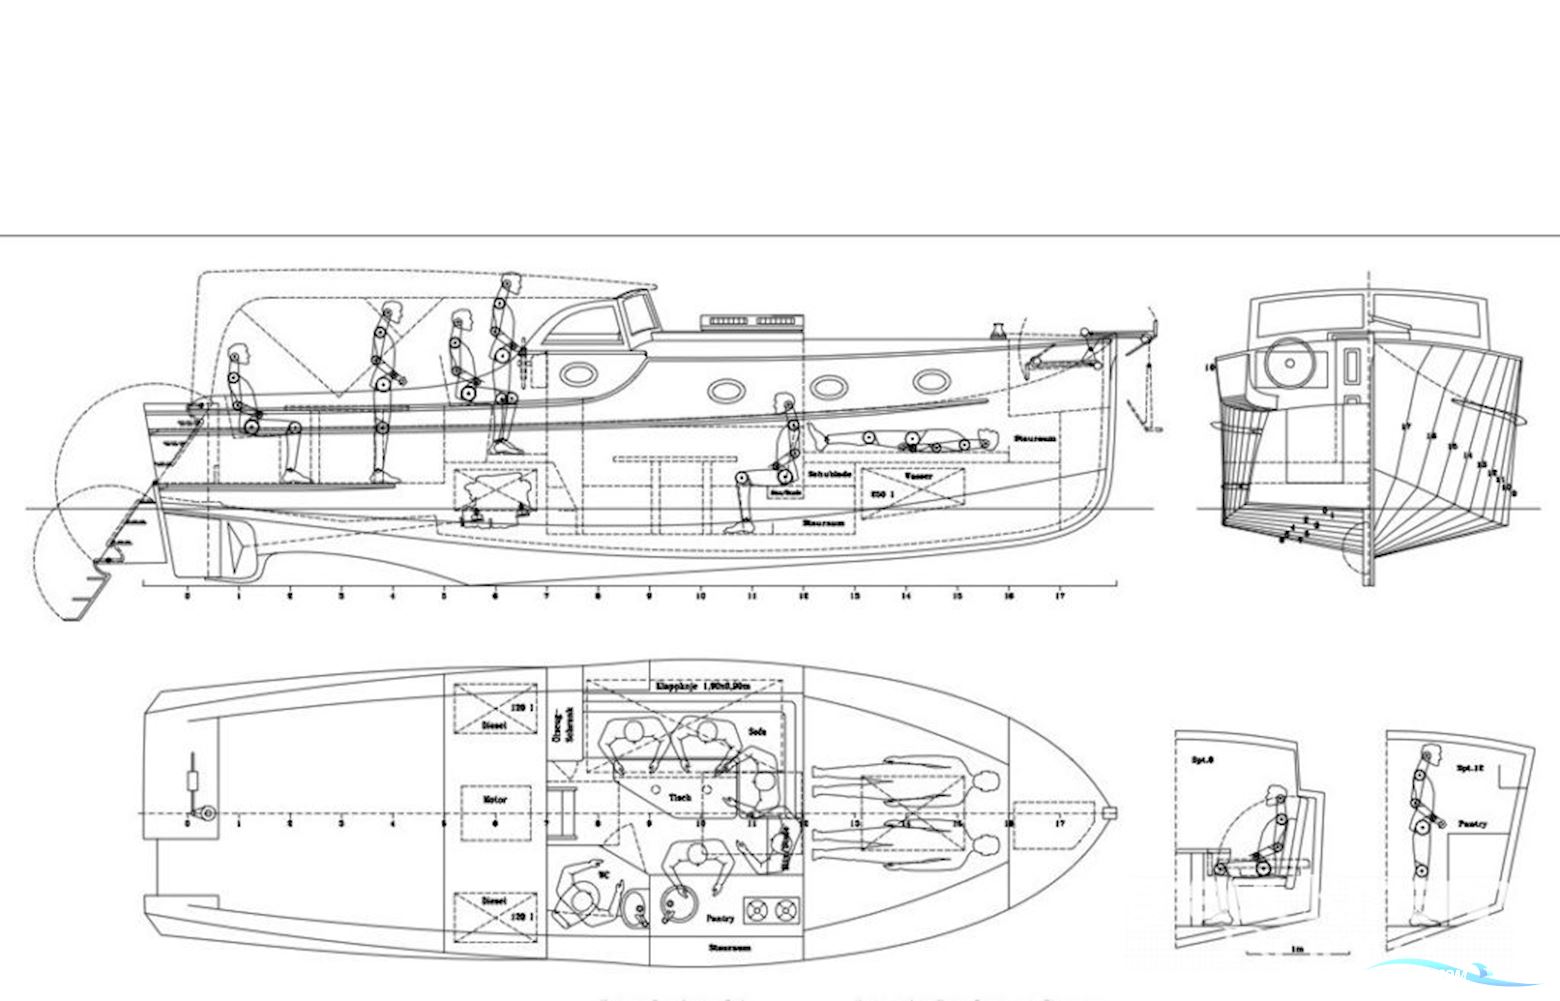 Bootsbau Use Backdecker Motor boat 2022, with Vetus engine, Germany